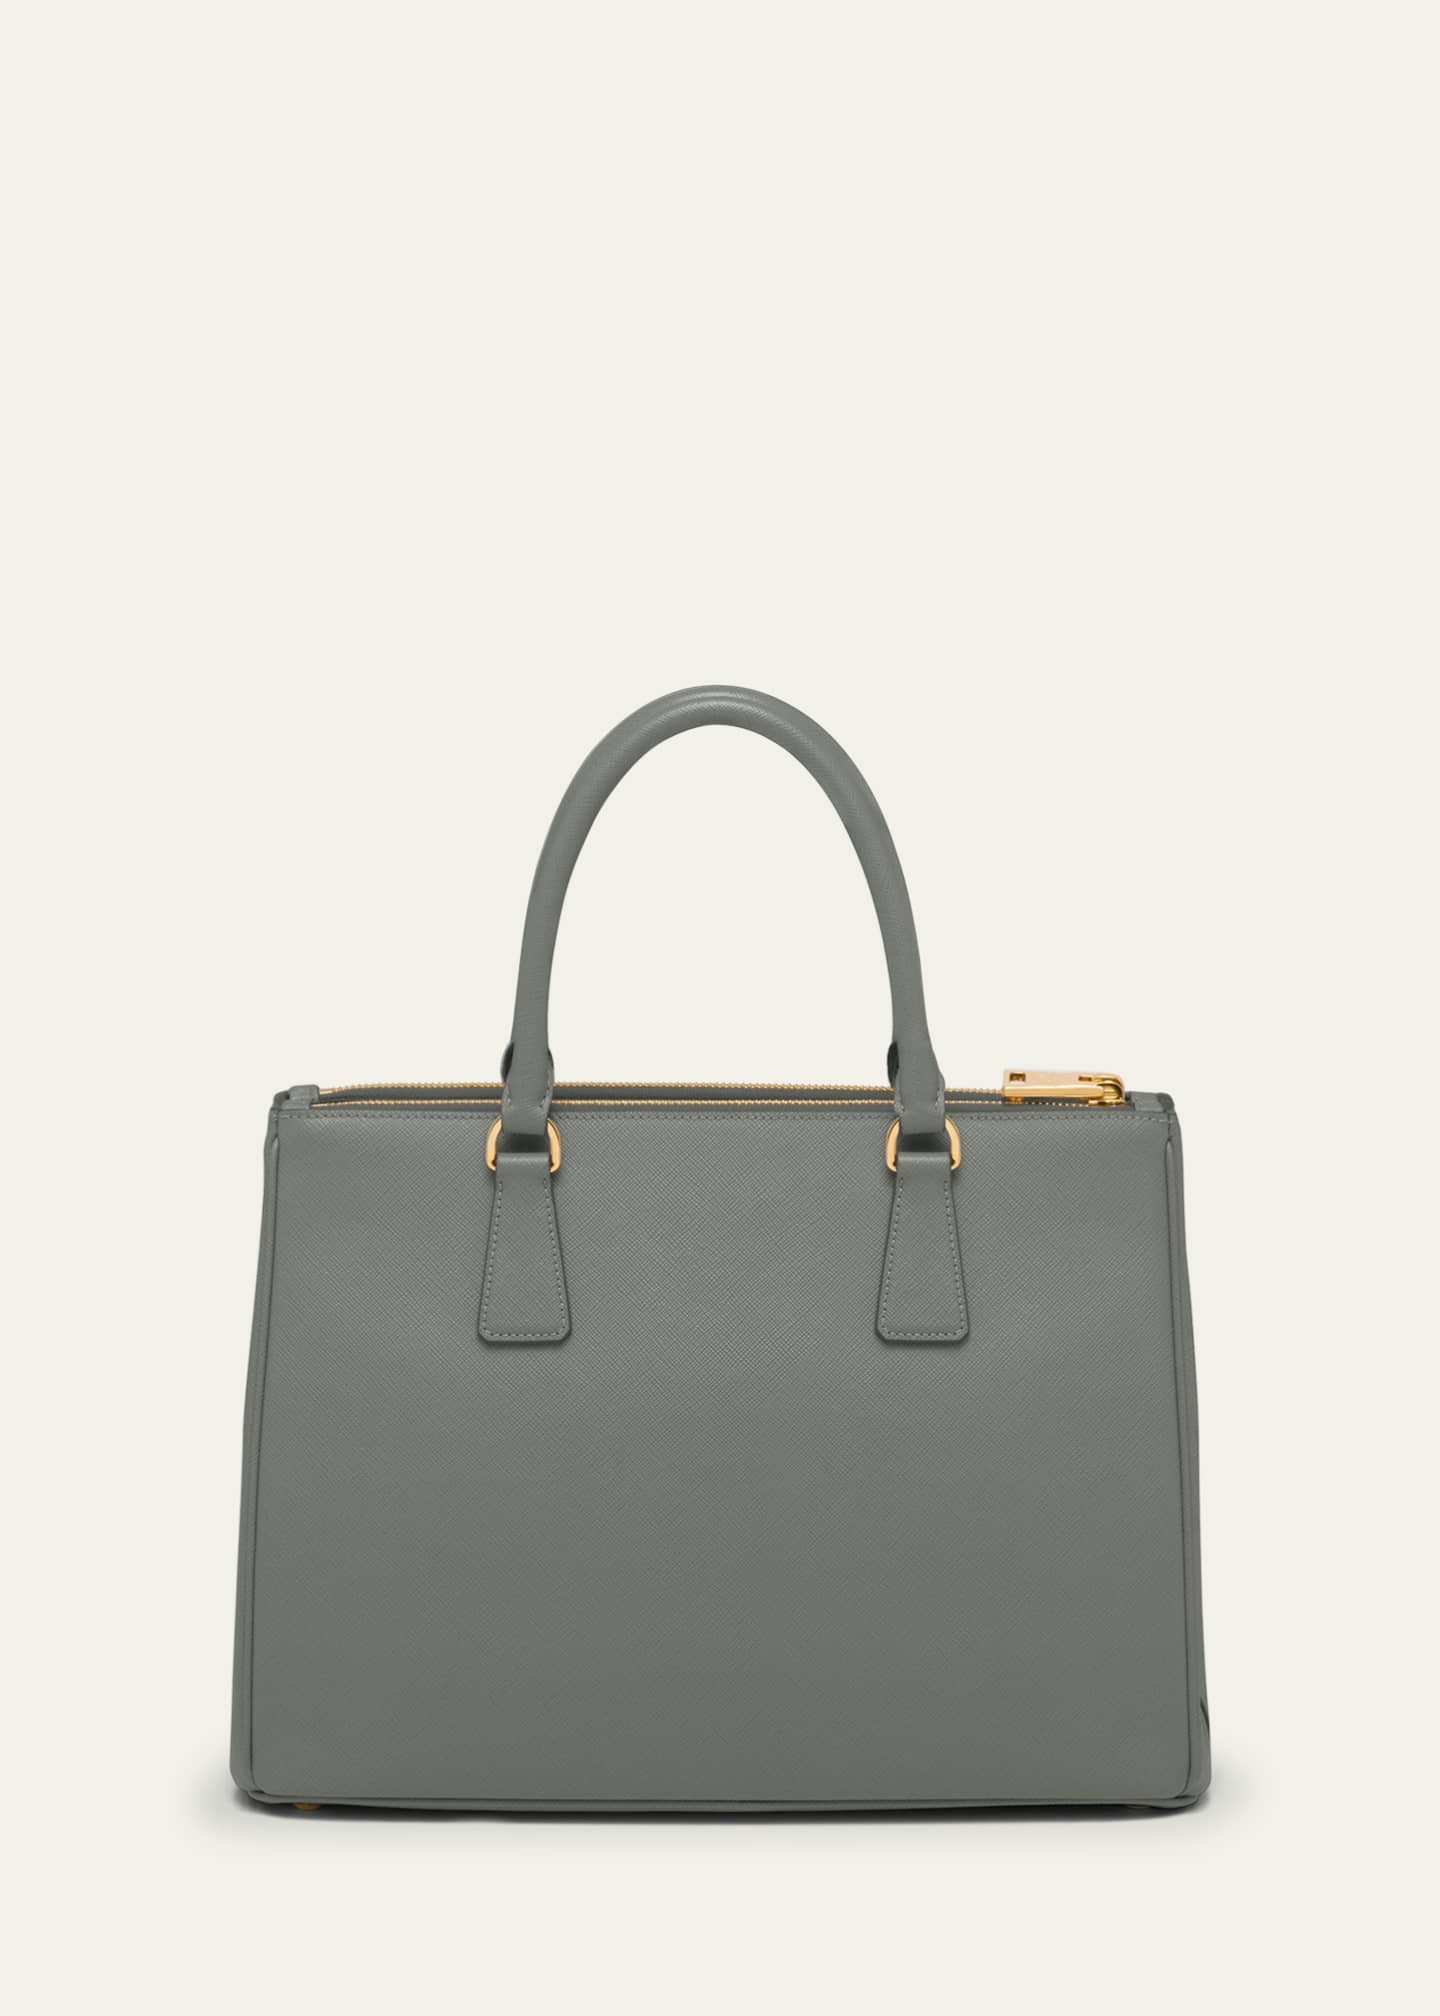 Prada large leather tote bag - Grey